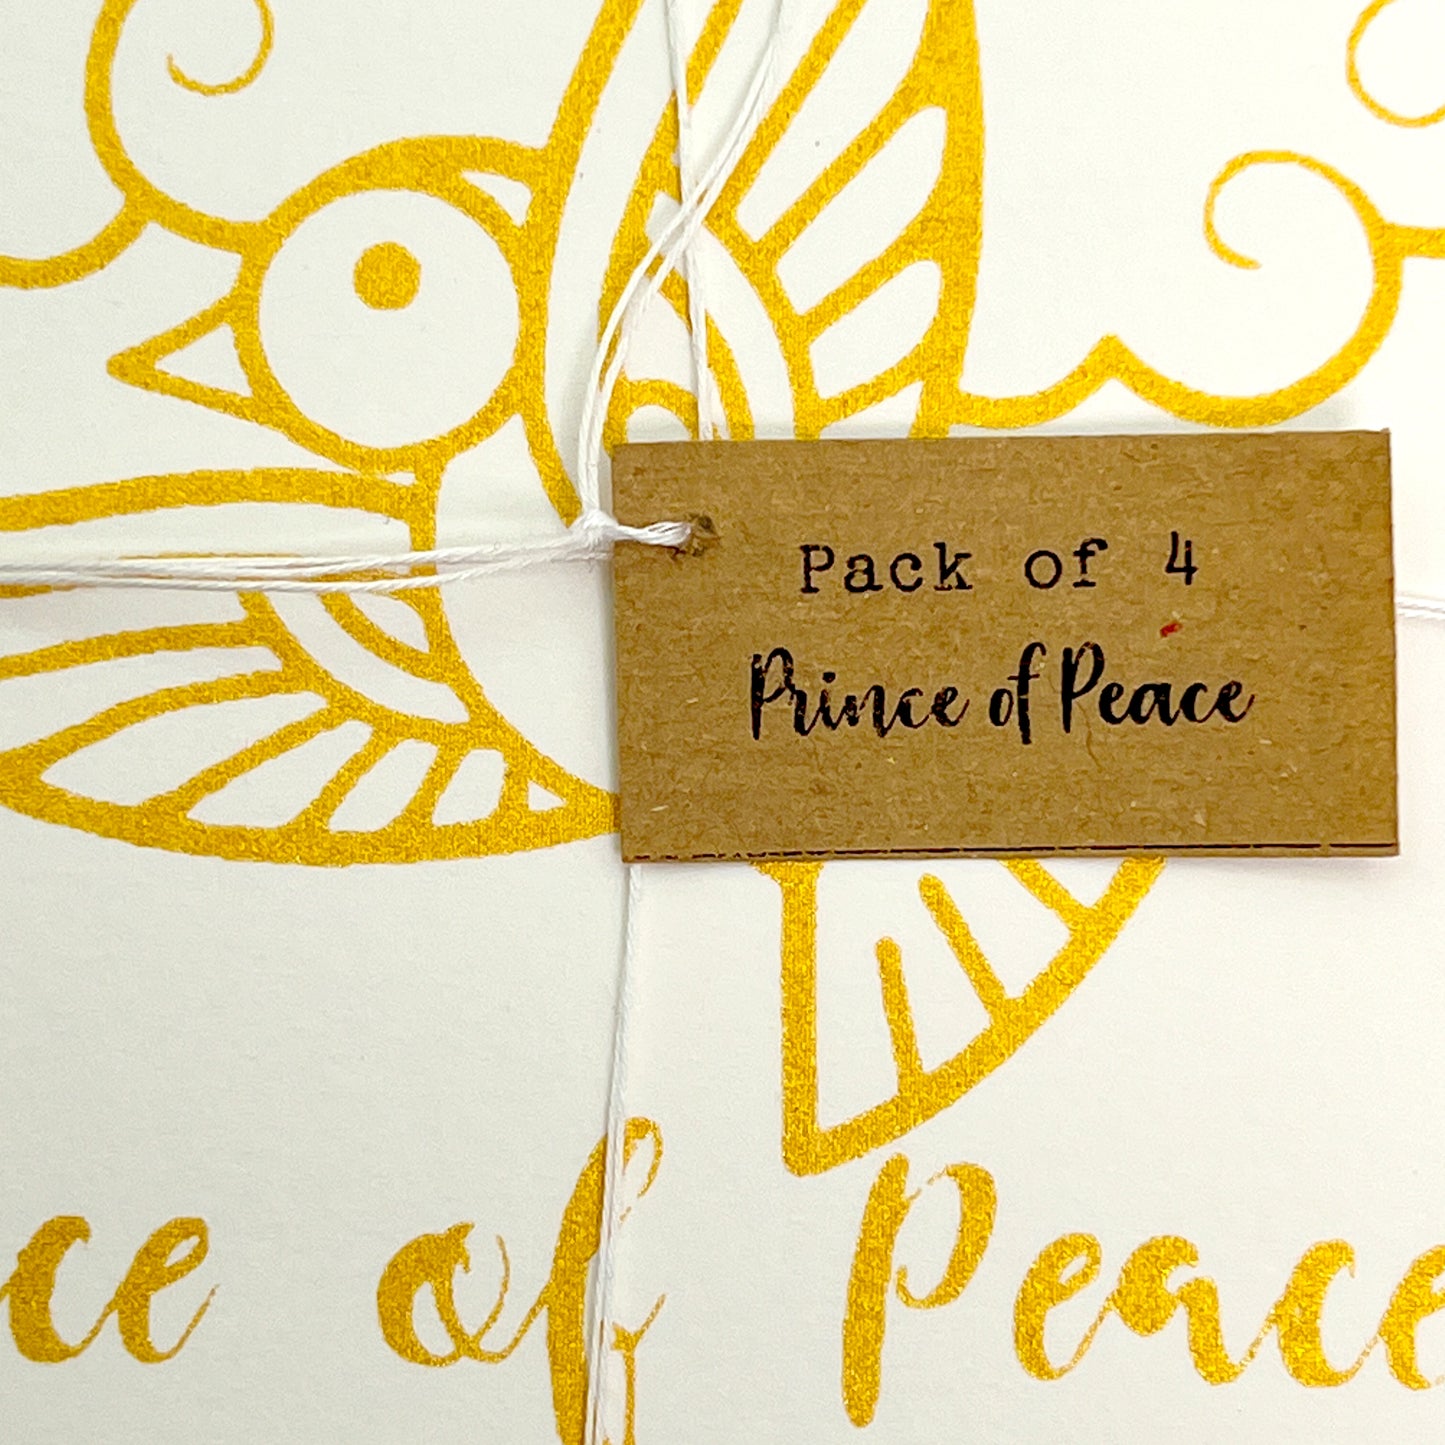 Christmas Card (hand-printed)- Prince of Peace